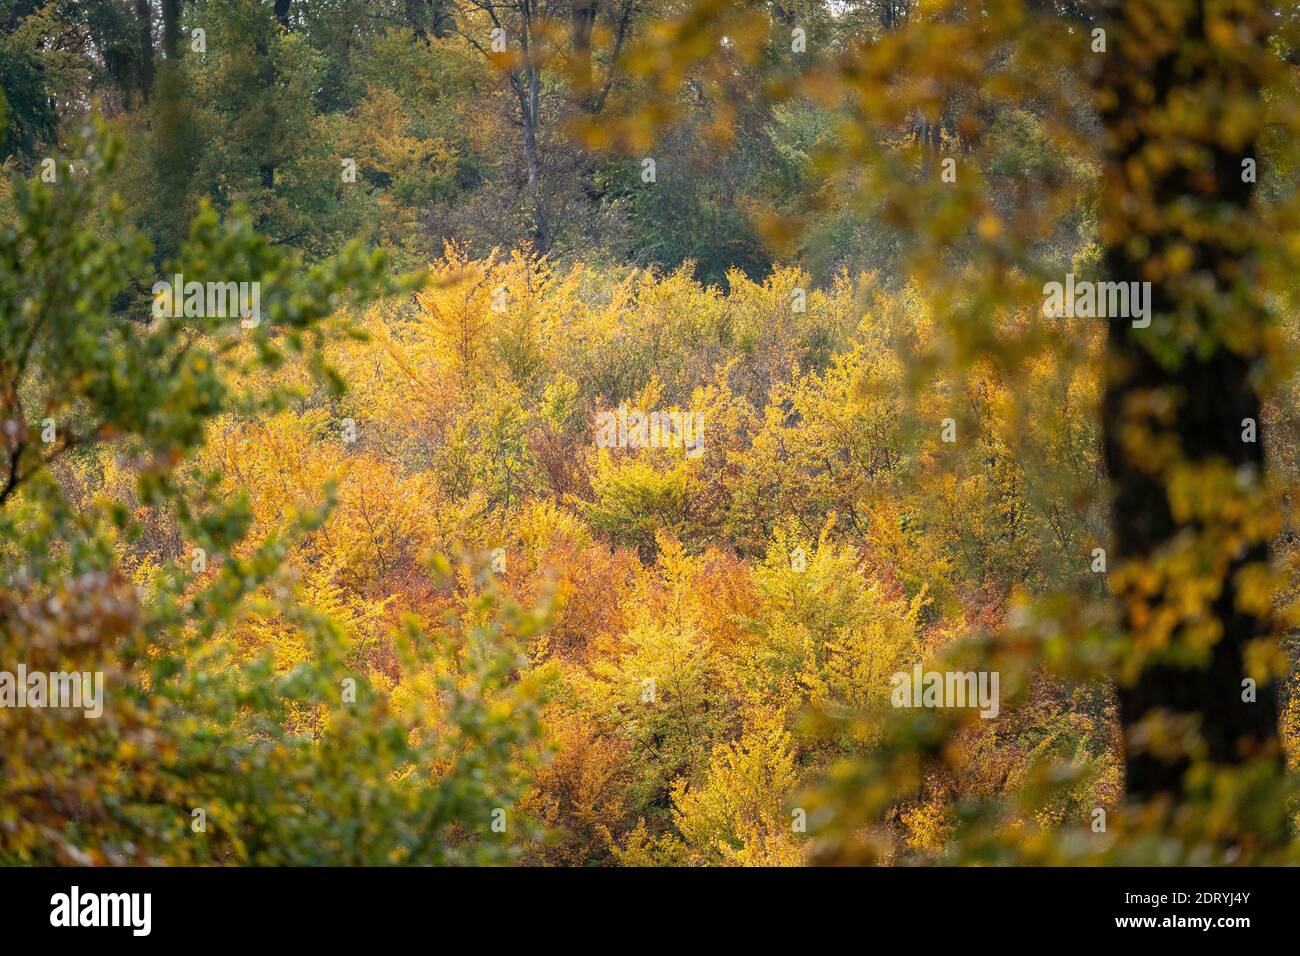 Blick auf einen Wald in Herbstsonne mit Laubbäumen und Blättern in schönen gelben und roten Farben, taunus, deutschland Stockfoto